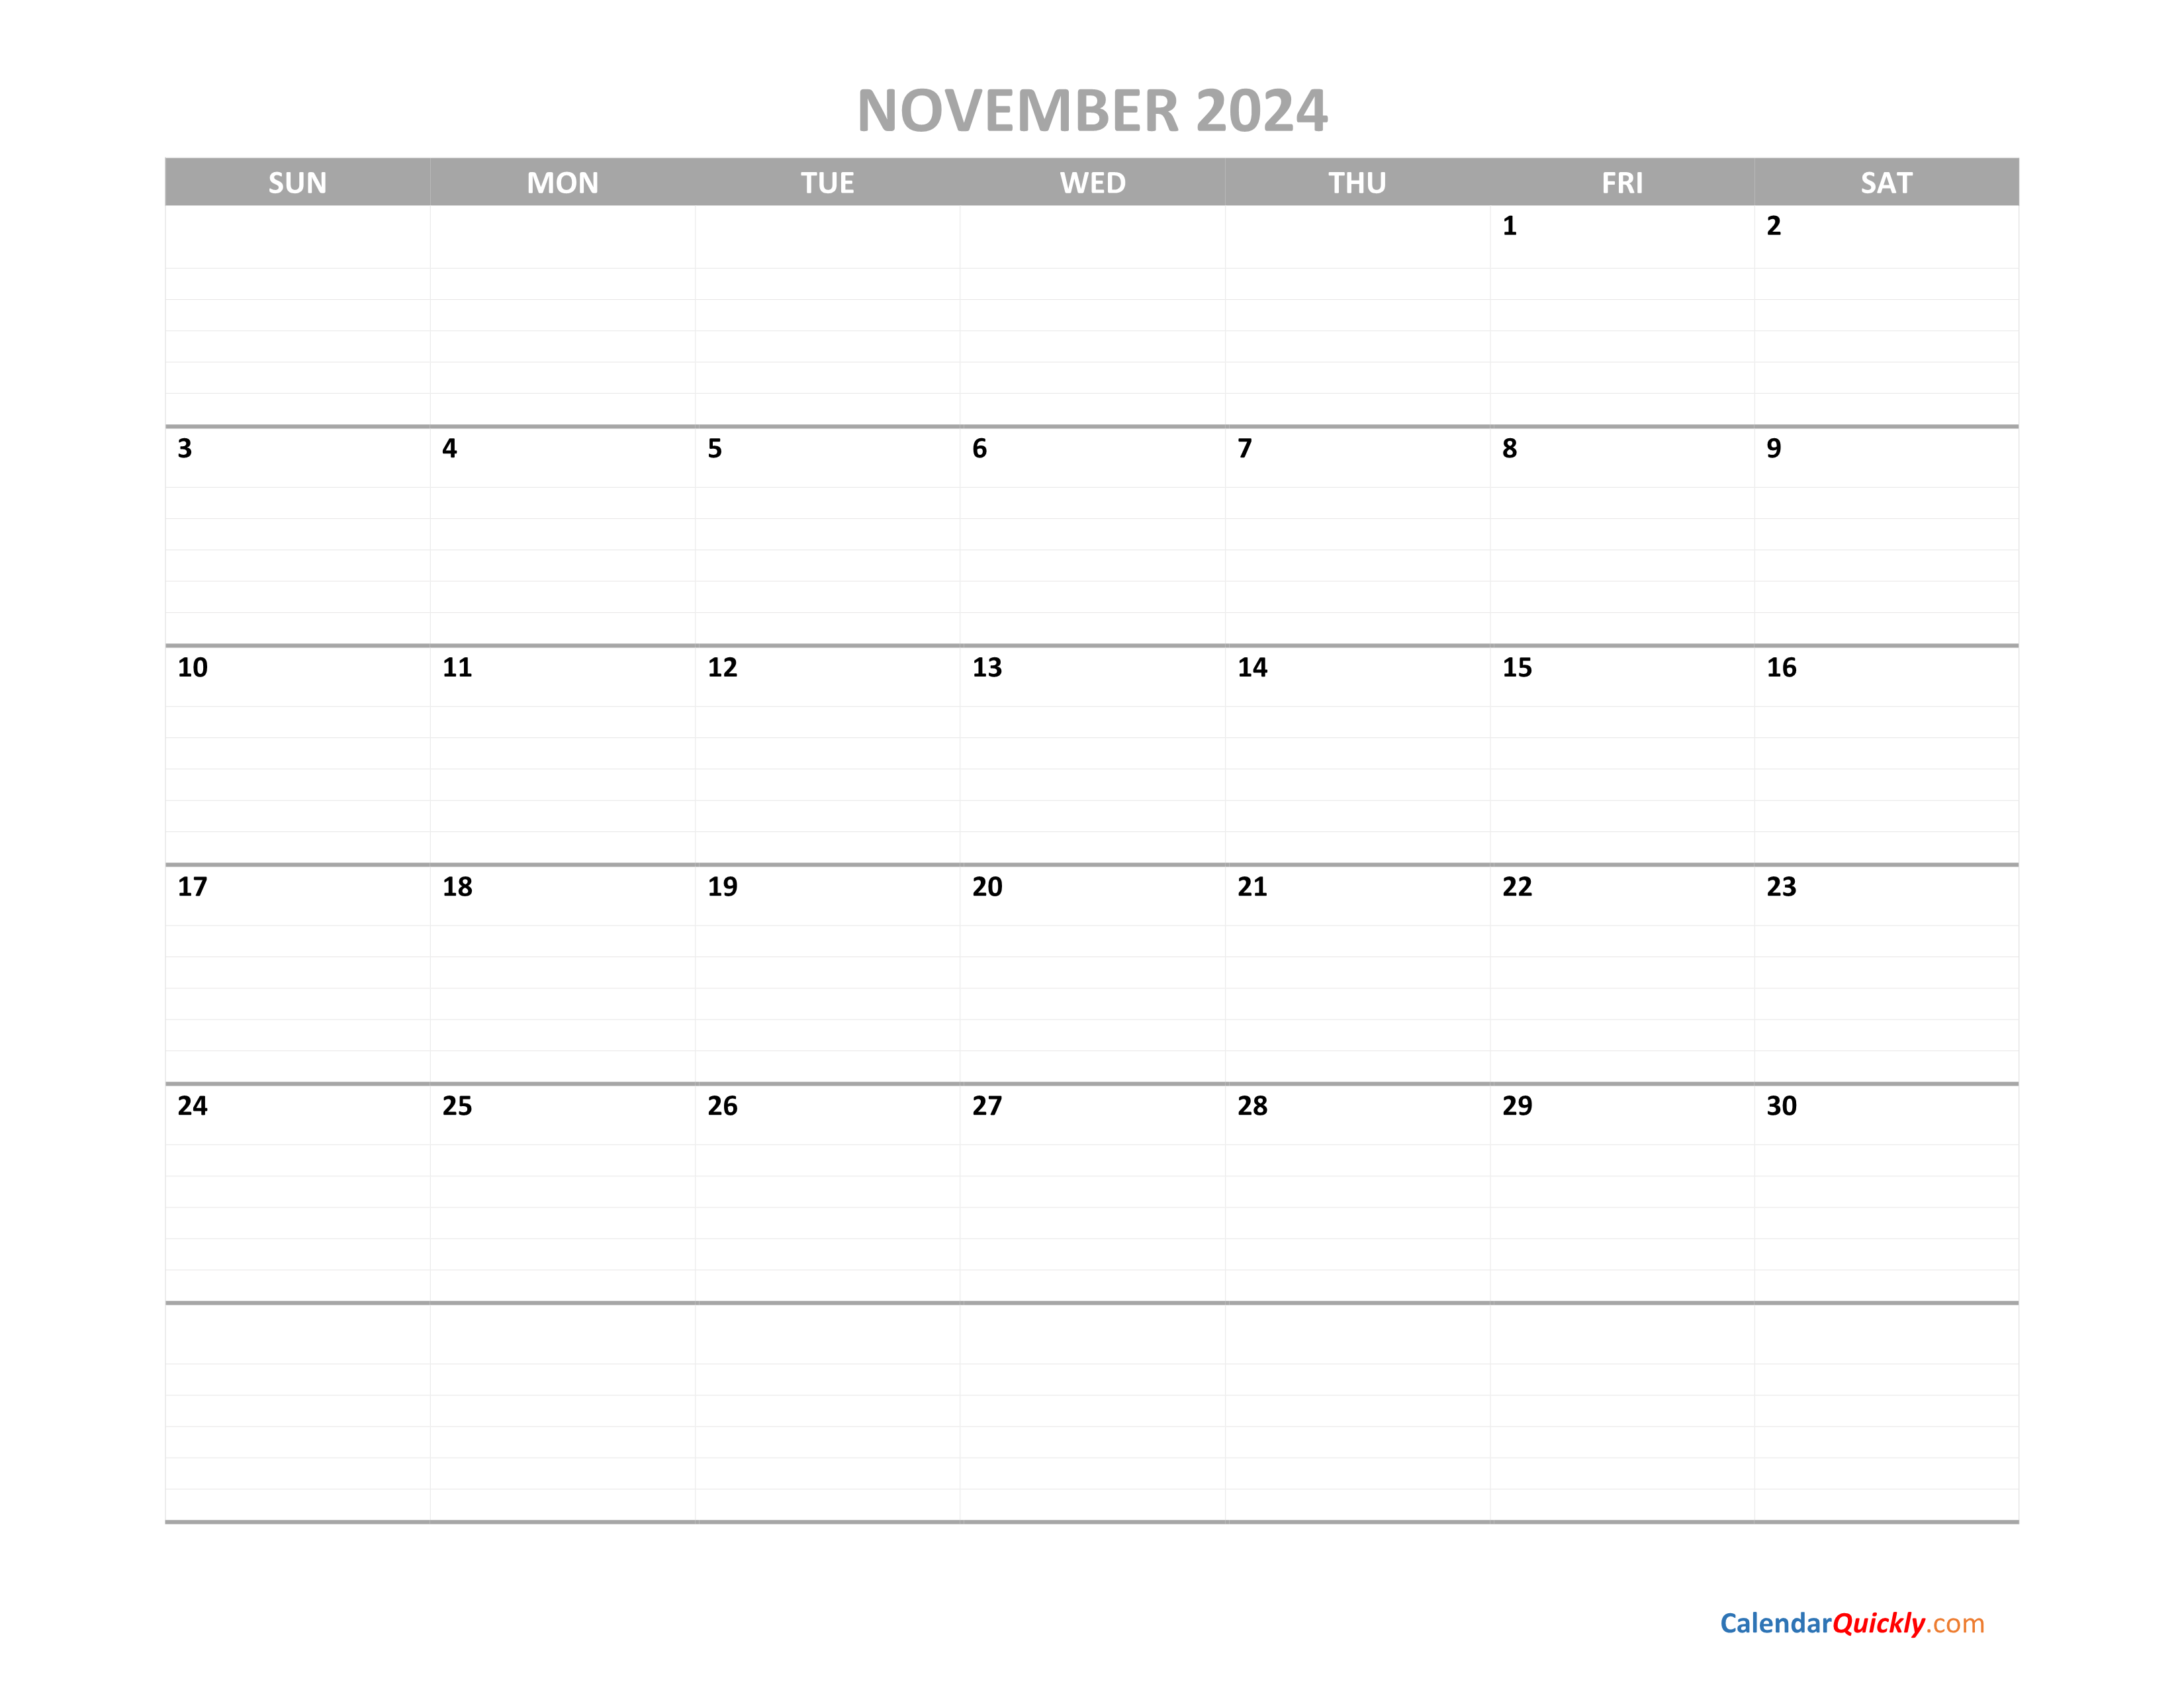 November Calendar 2024 Printable Calendar Quickly - Free Printable 2024 Calendar November